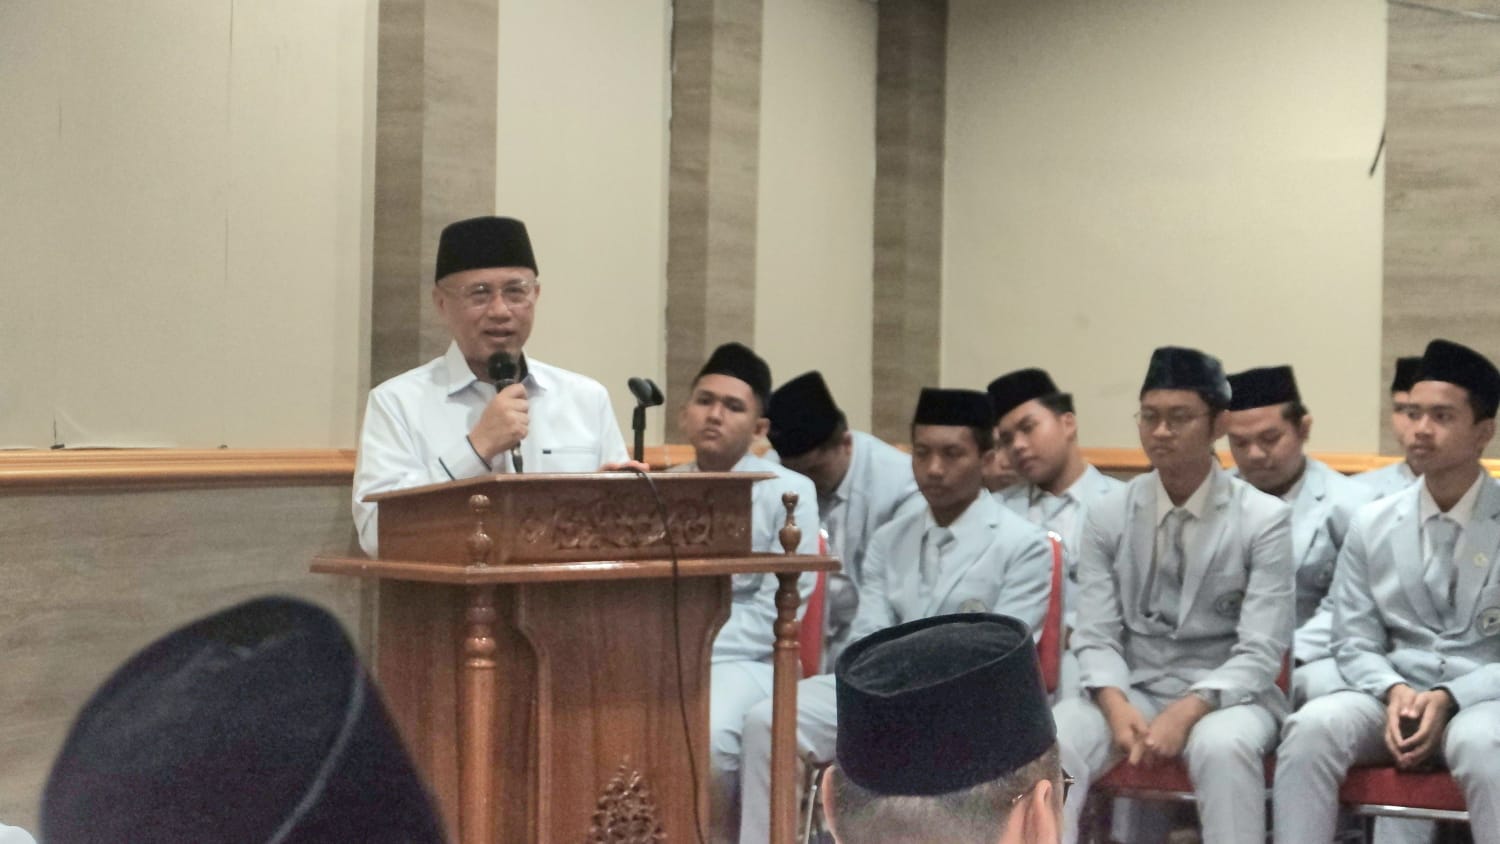 MAN 4 Jakarta Kirim 32 Imam Tarawih ke 14 Masjid di Jakarta, Bekasi, Tangsel